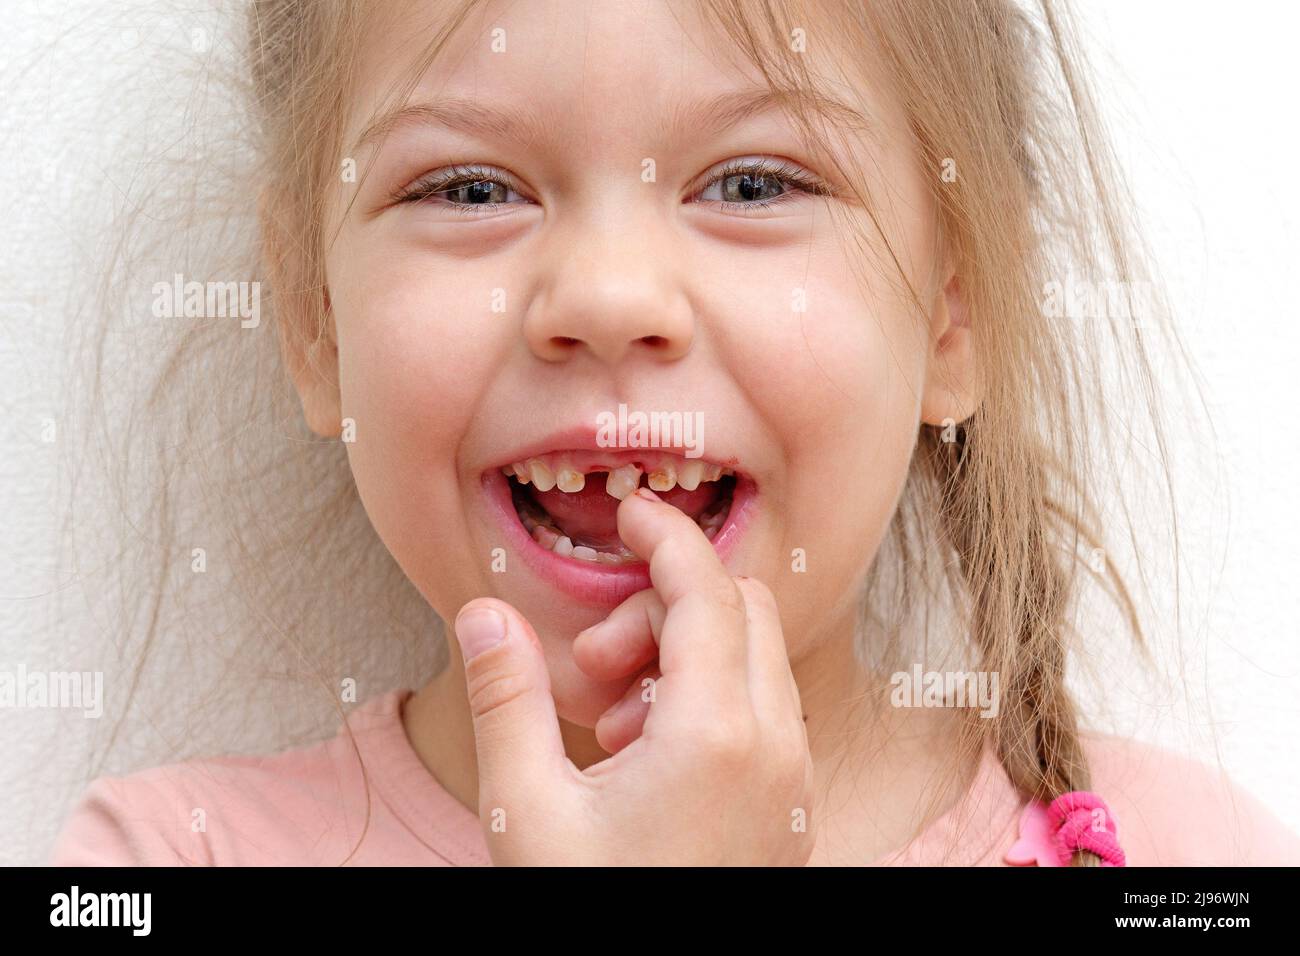 Bonne et souriante petite fille caucasienne de 5-6 ans touchant la dent lâche par le doigt regardant la caméra Banque D'Images